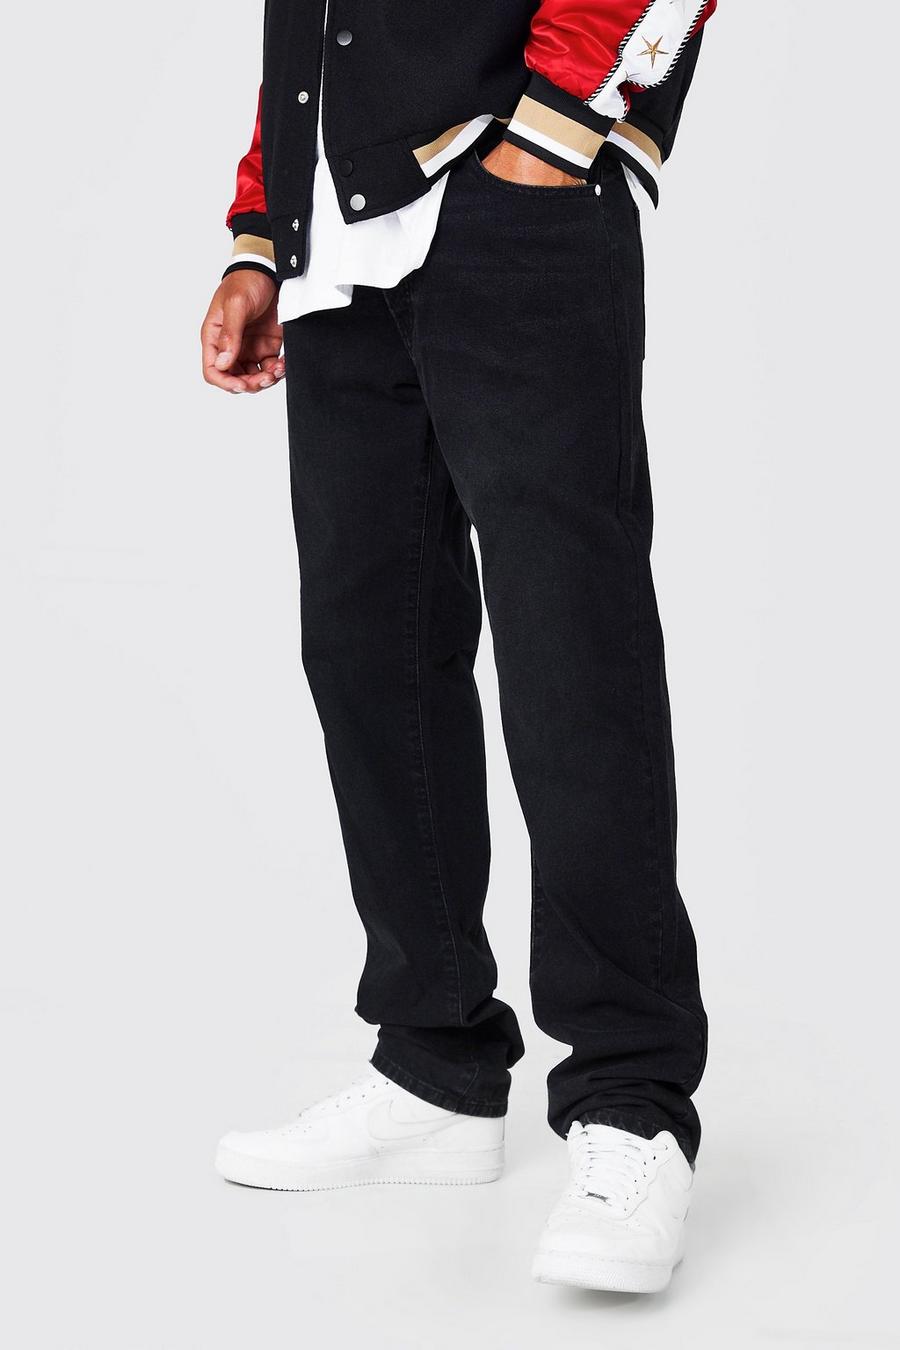 שחור דהוי ג'ינס עם כותנה ממוחזרת בגזרה ישרה, לגברים גבוהים